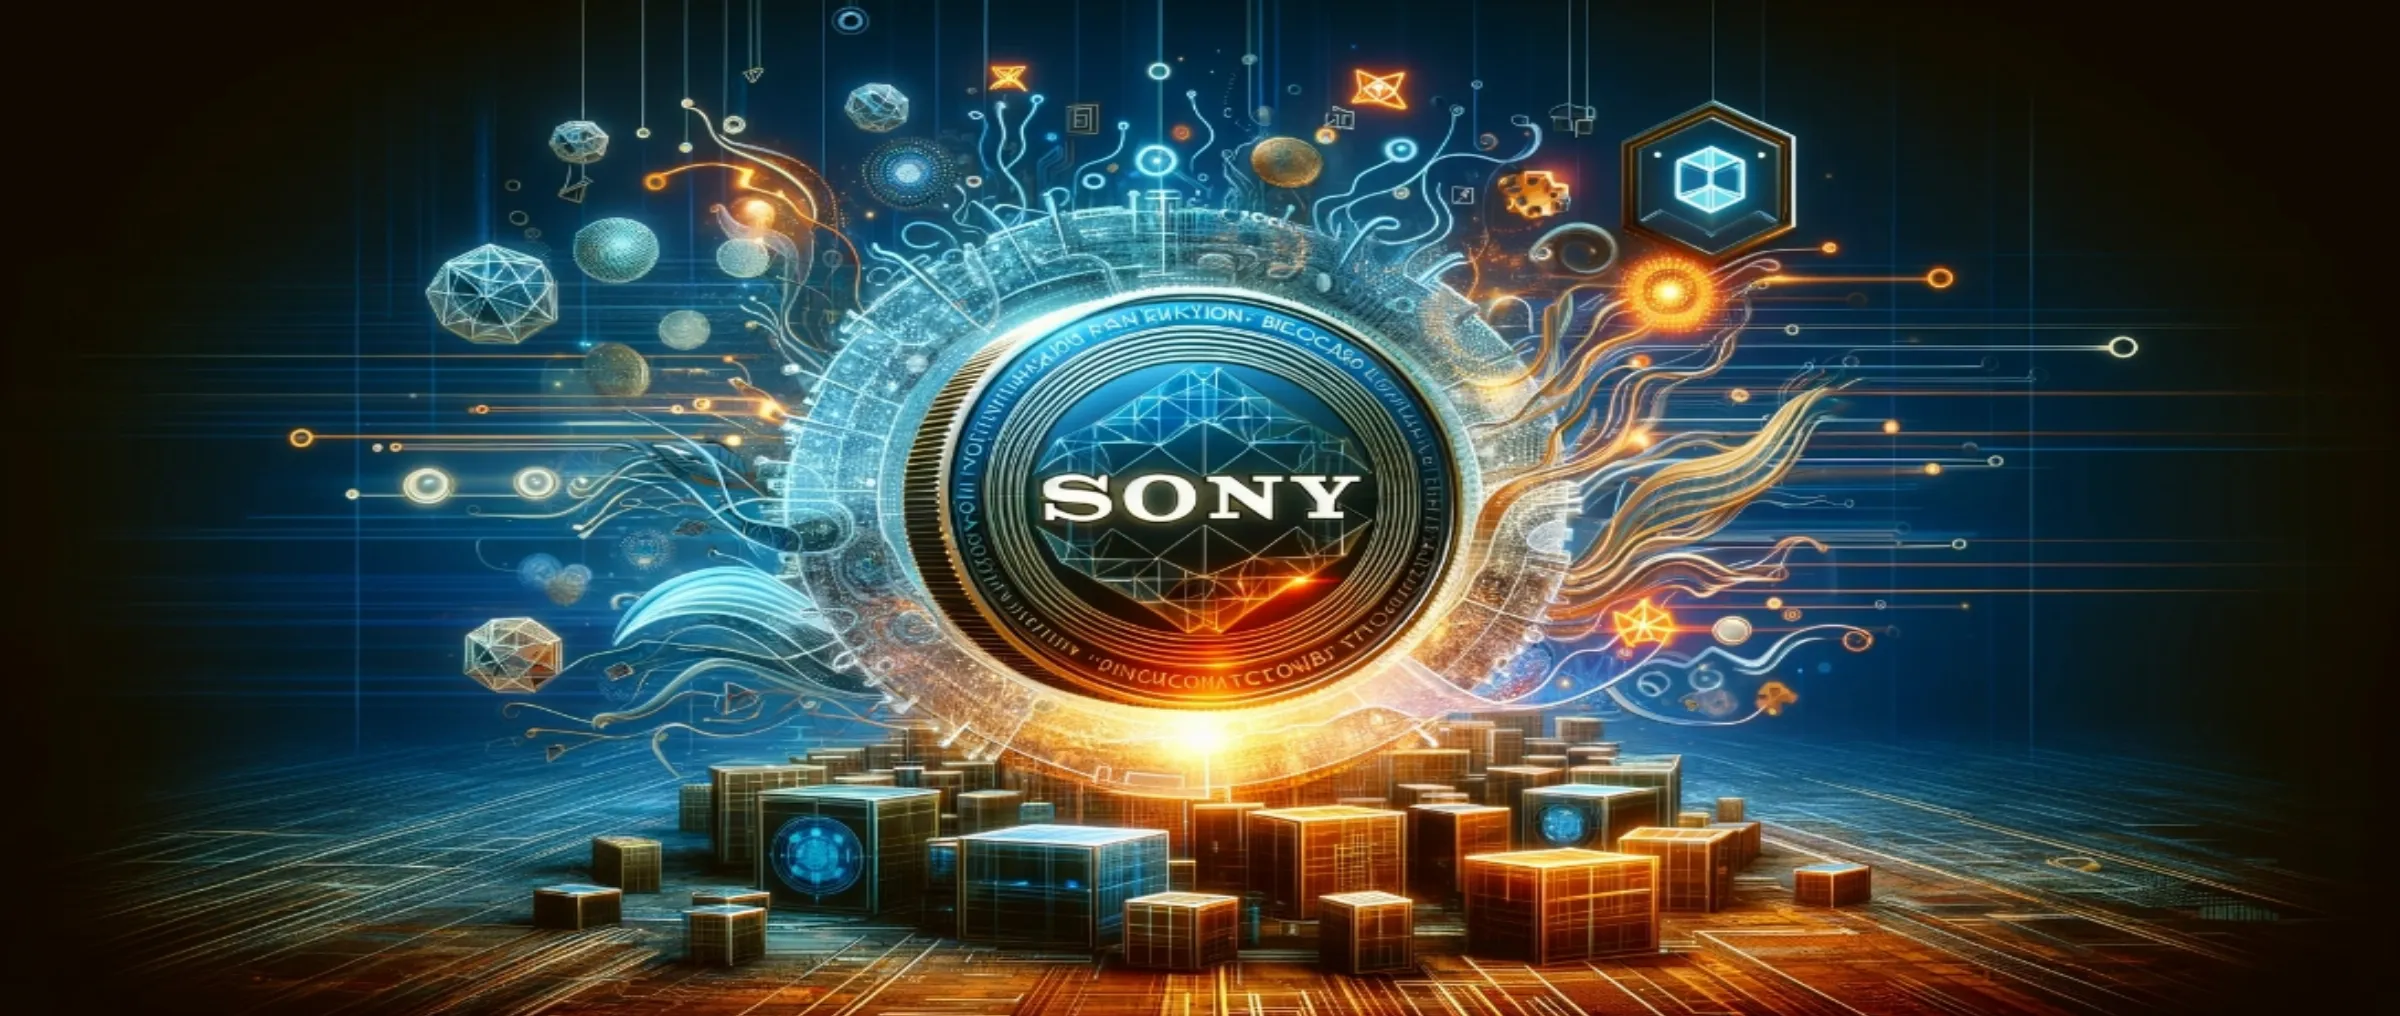 Sony планирует революцию в области блокчейна с новым патентом «супервзаимозаменяемый» токен